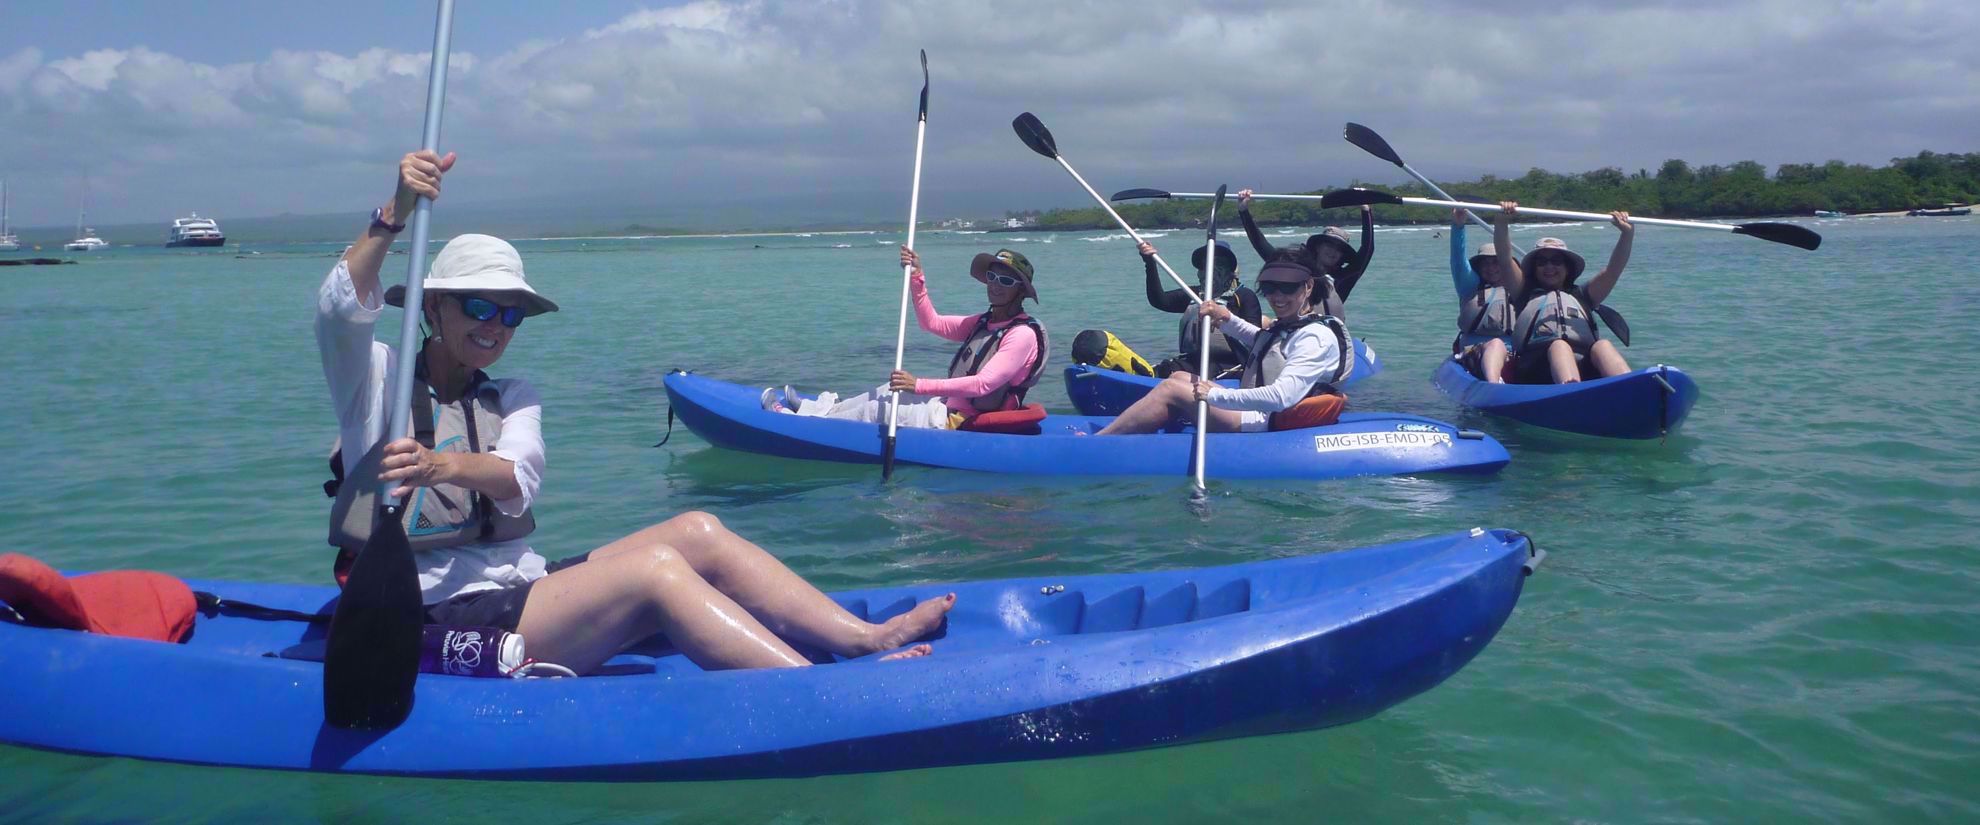 women kayaking in water around the galapagos on group travel tour